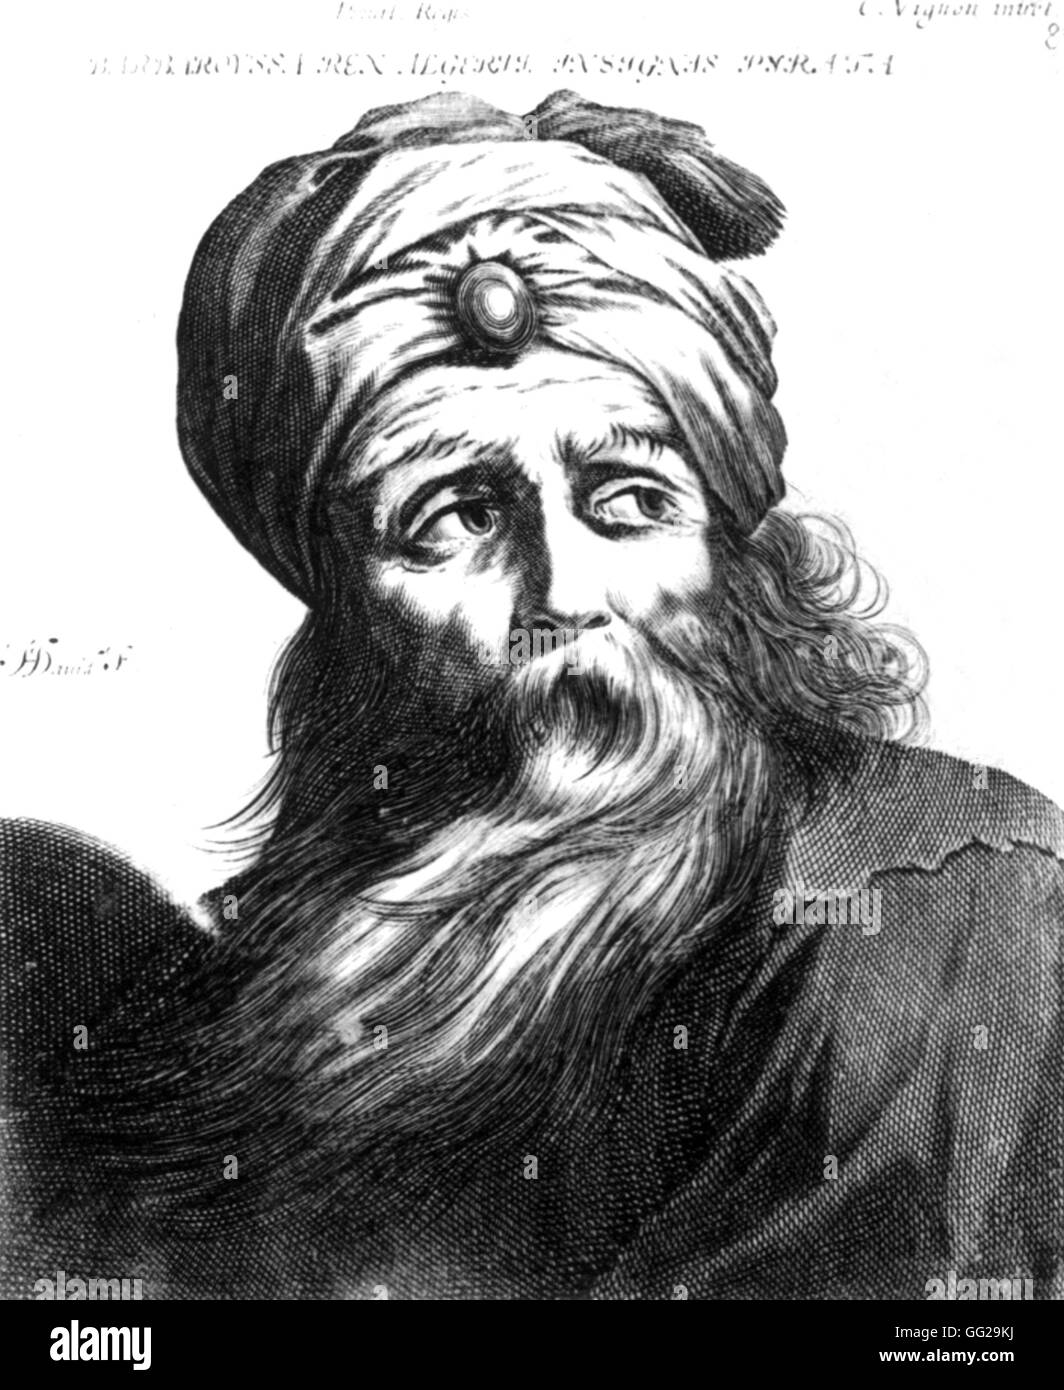 Pirate turque Hayreddin Barberousse, qui a fondé l'état d'Alger au 16e siècle Banque D'Images